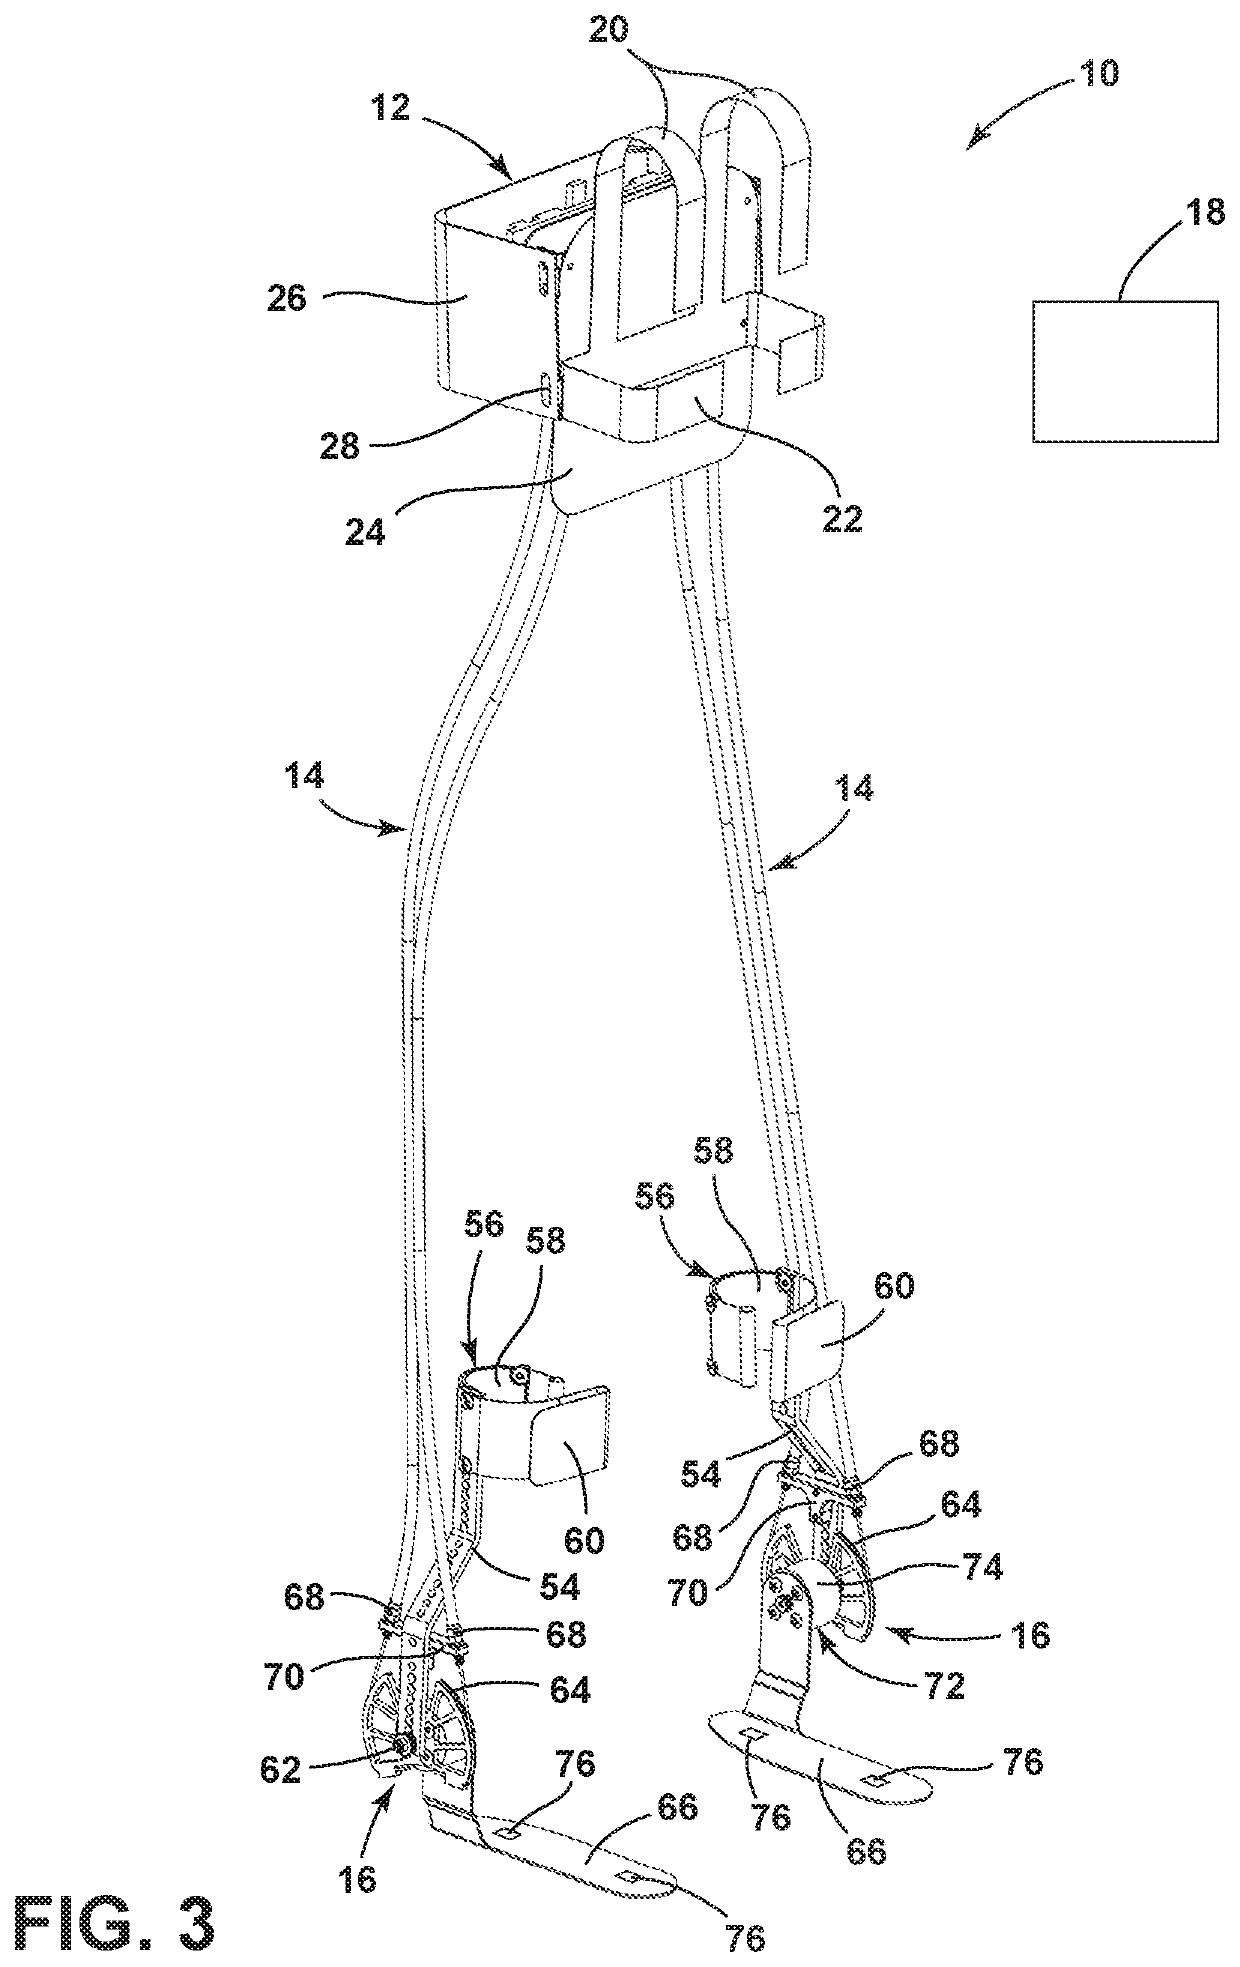 Exoskeleton device